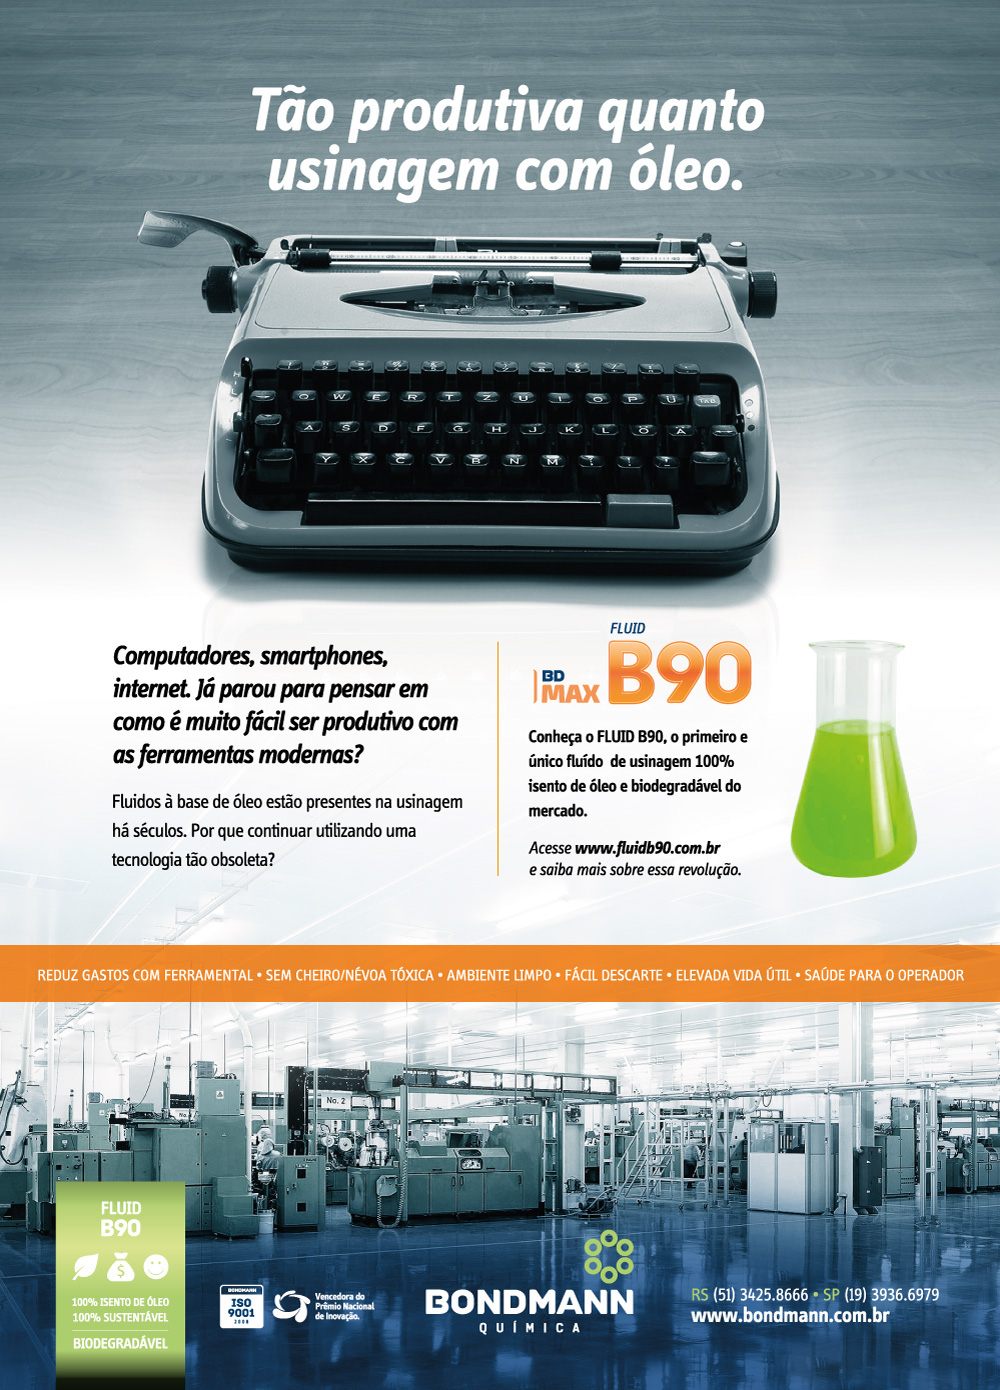 Química revolução Carta Máquina de Escrever computador moderno oleo Usinagem industria